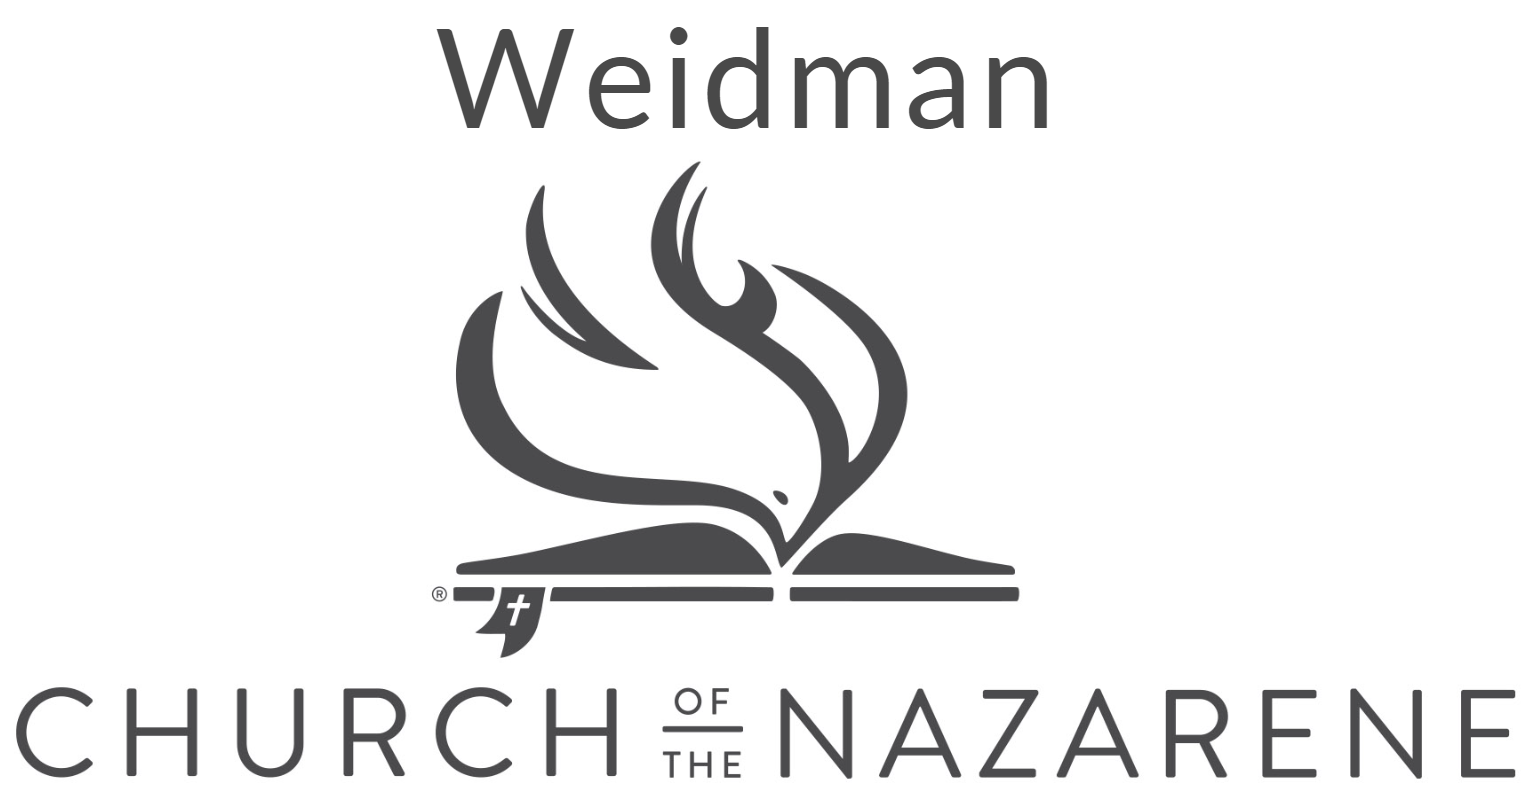 Weidman Chruch of The Nazarene